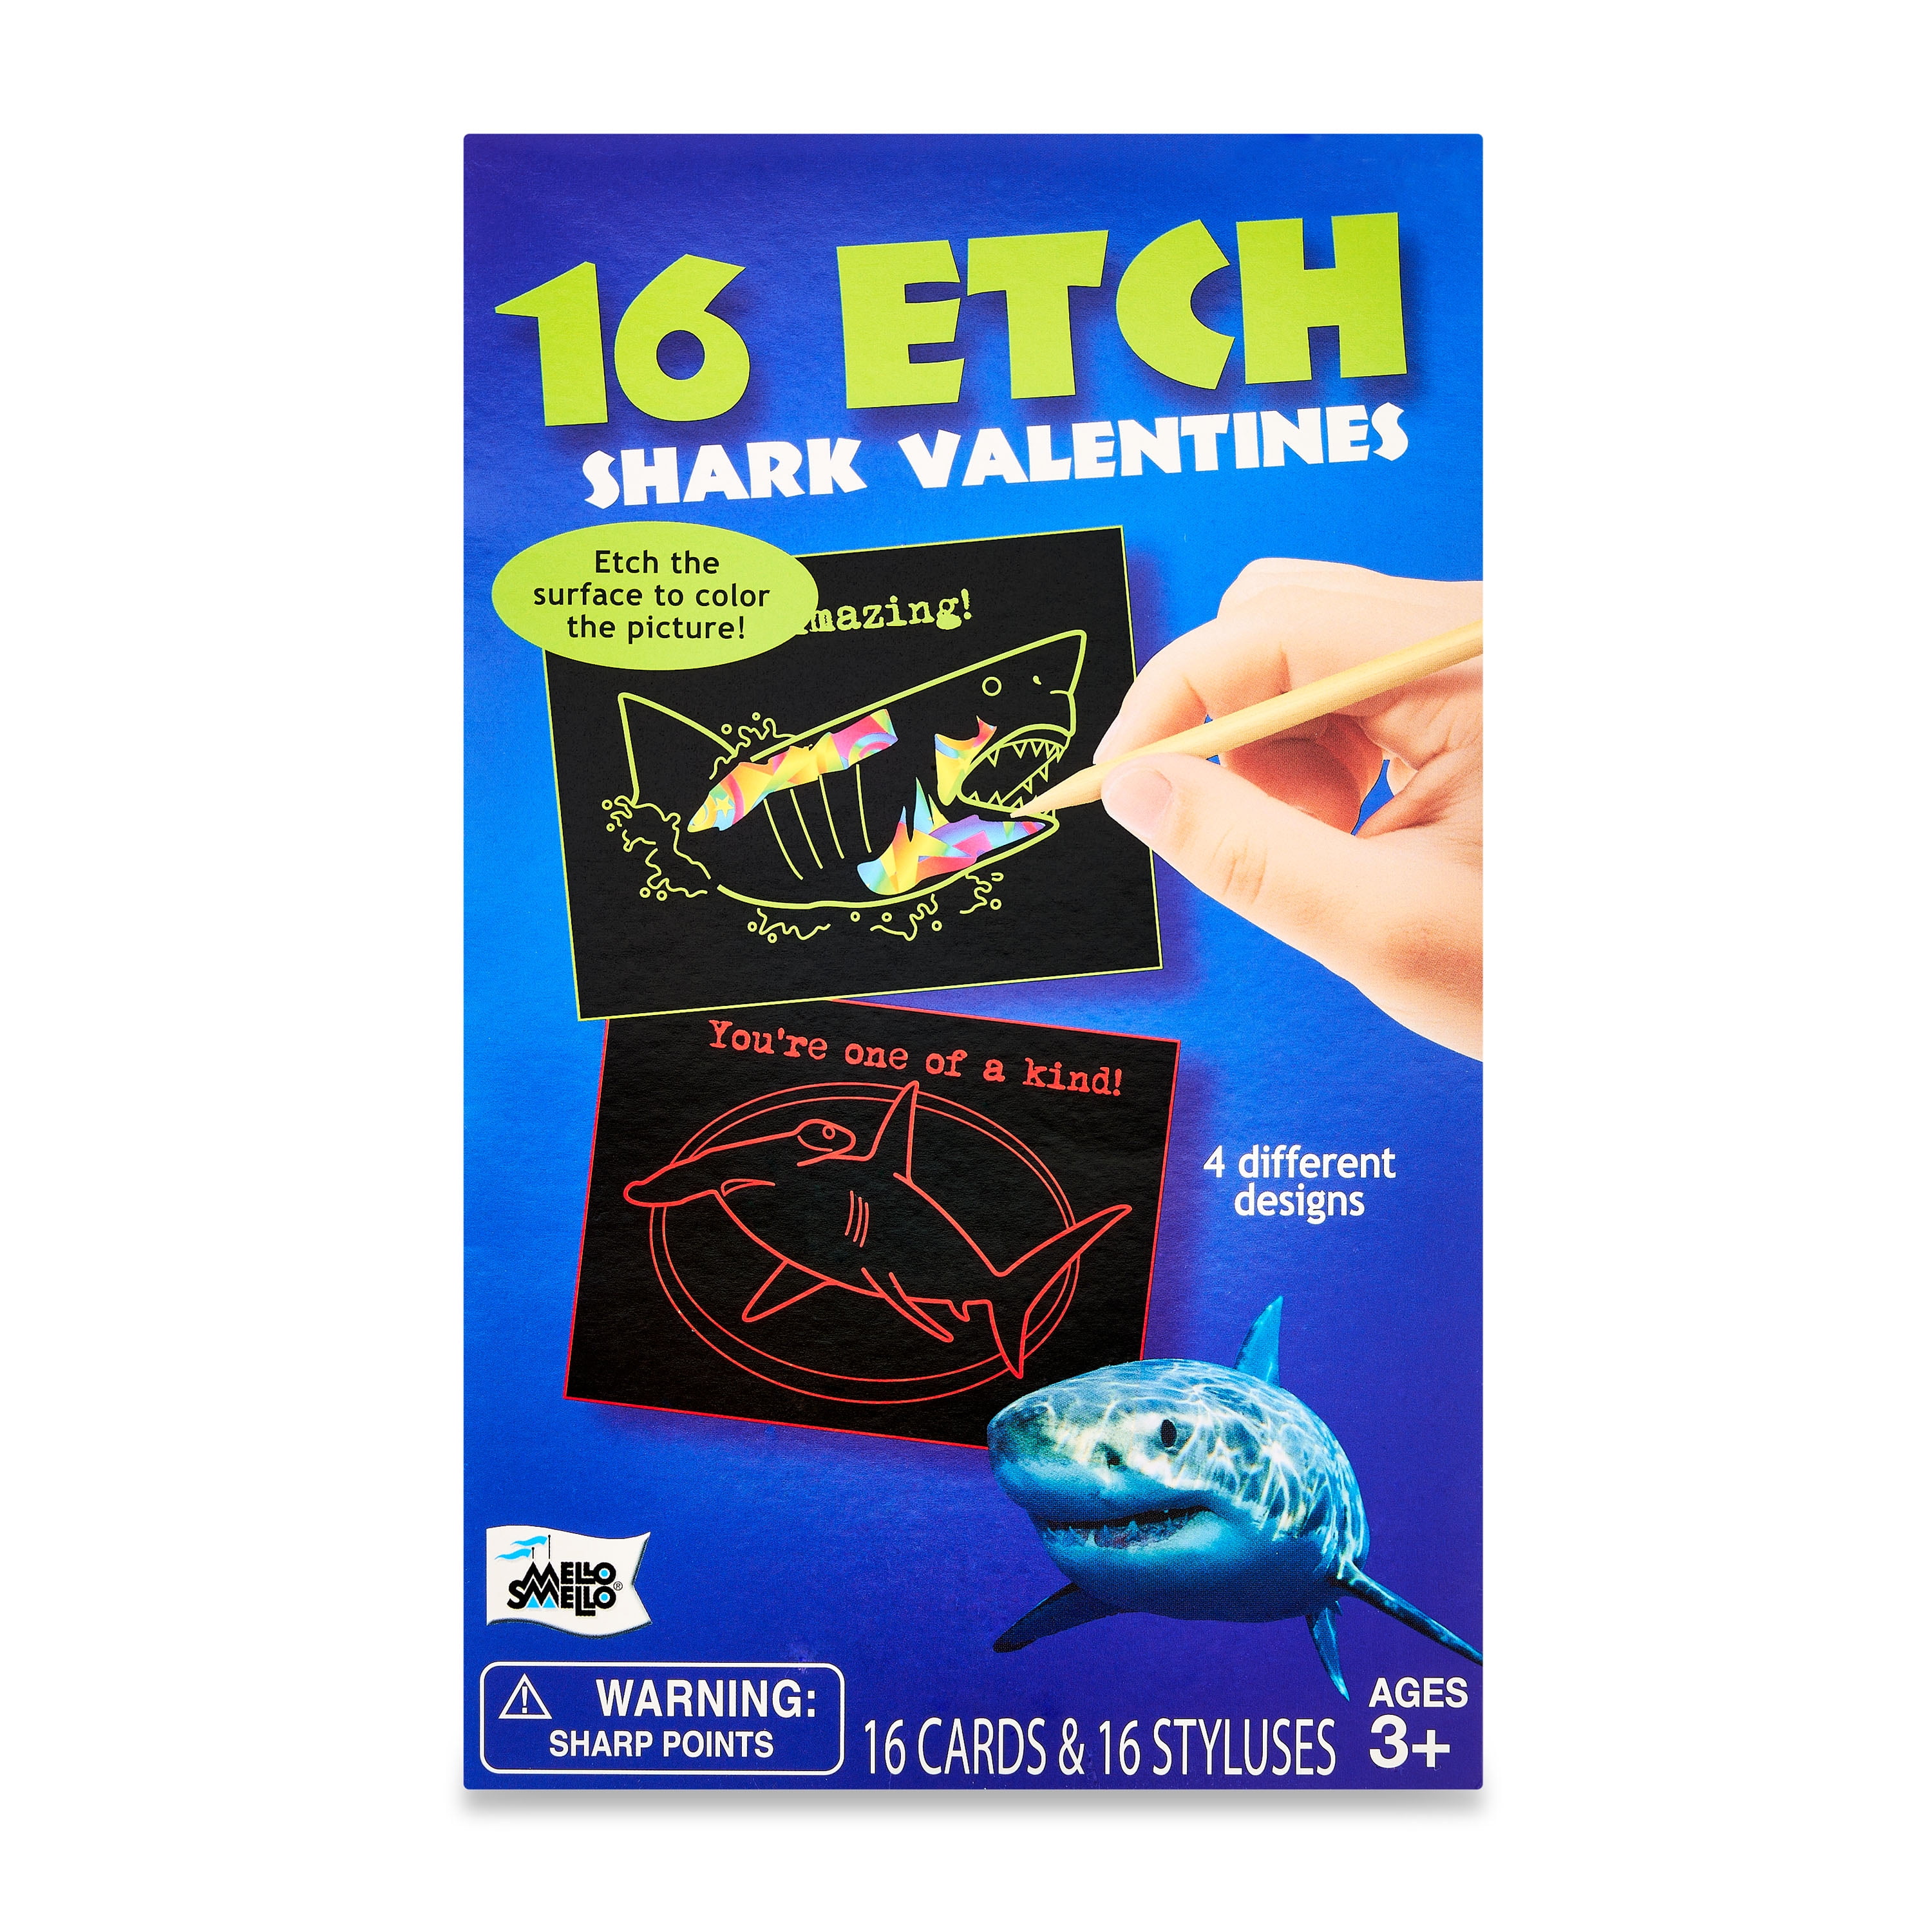 Mello Smello Valentine's Day Etch Shark Valentines Kiddie Cards, 16CT